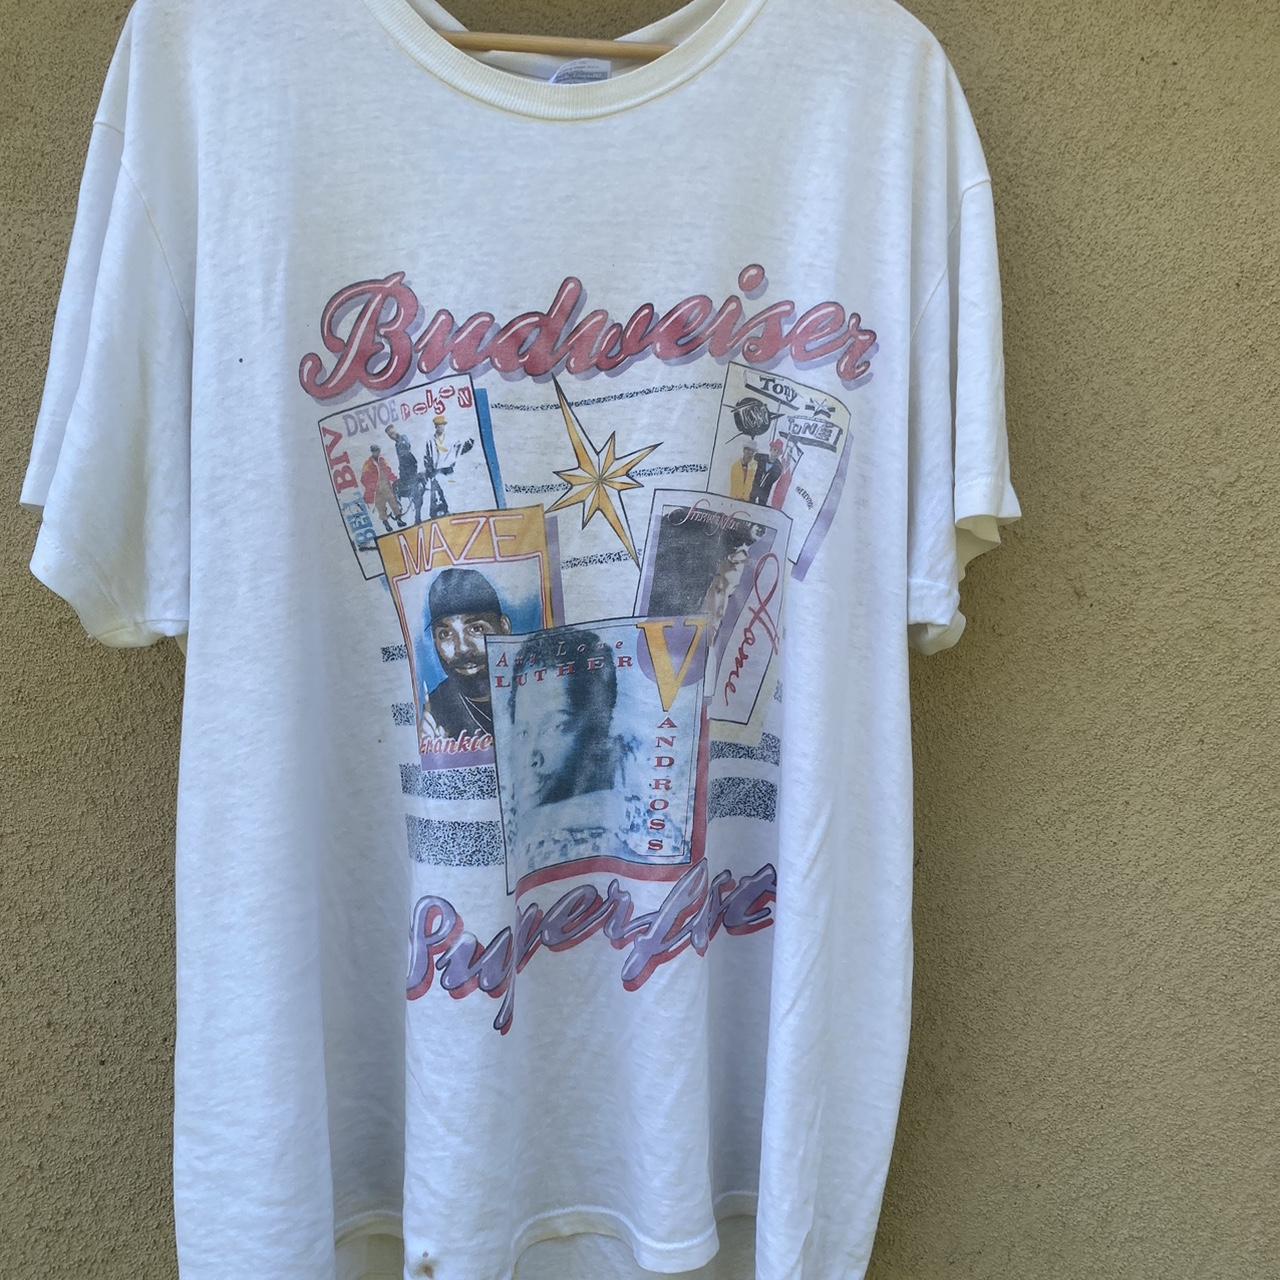 90s music shirt 1990 Budweiser superfest Size XL... - Depop